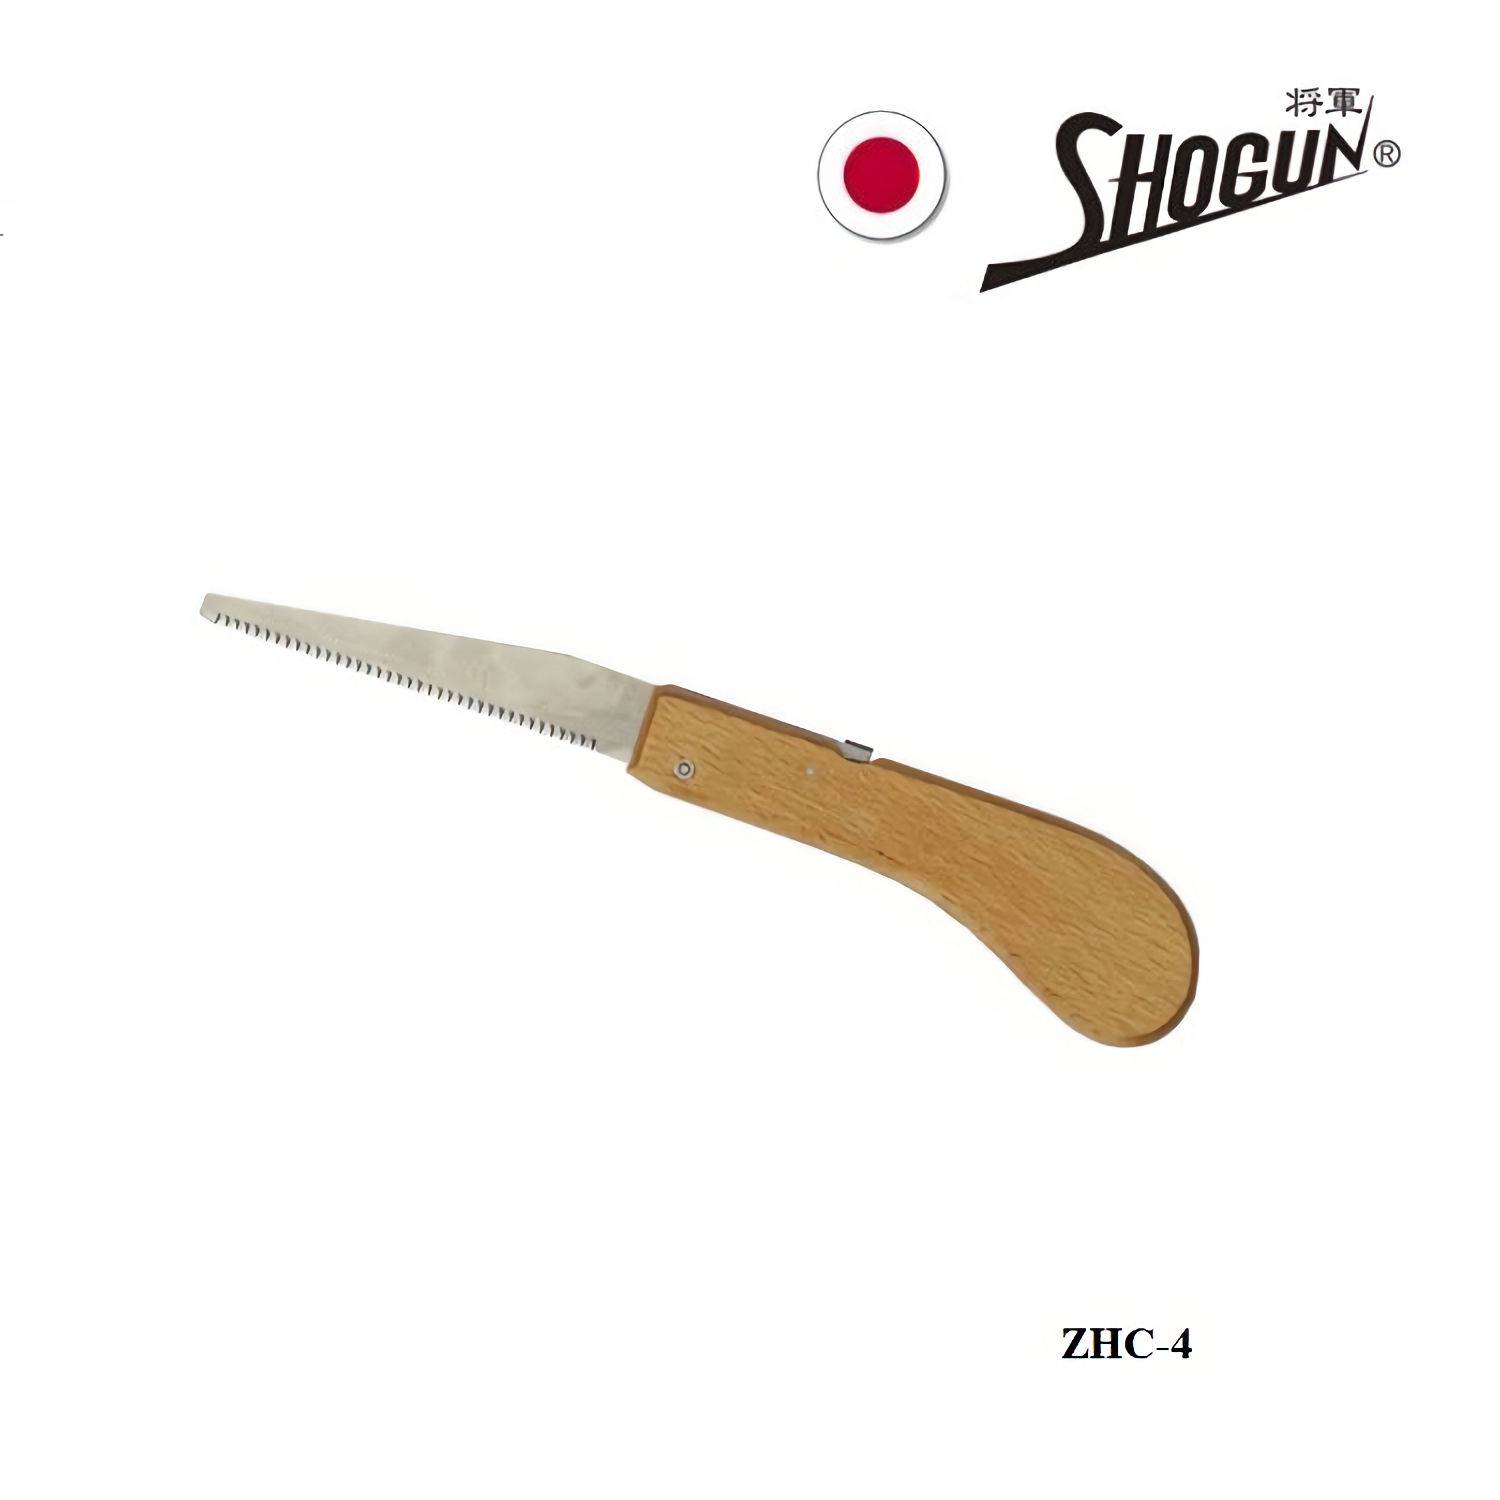 japanse-trekzaag-Shogun-100mm-zhc4